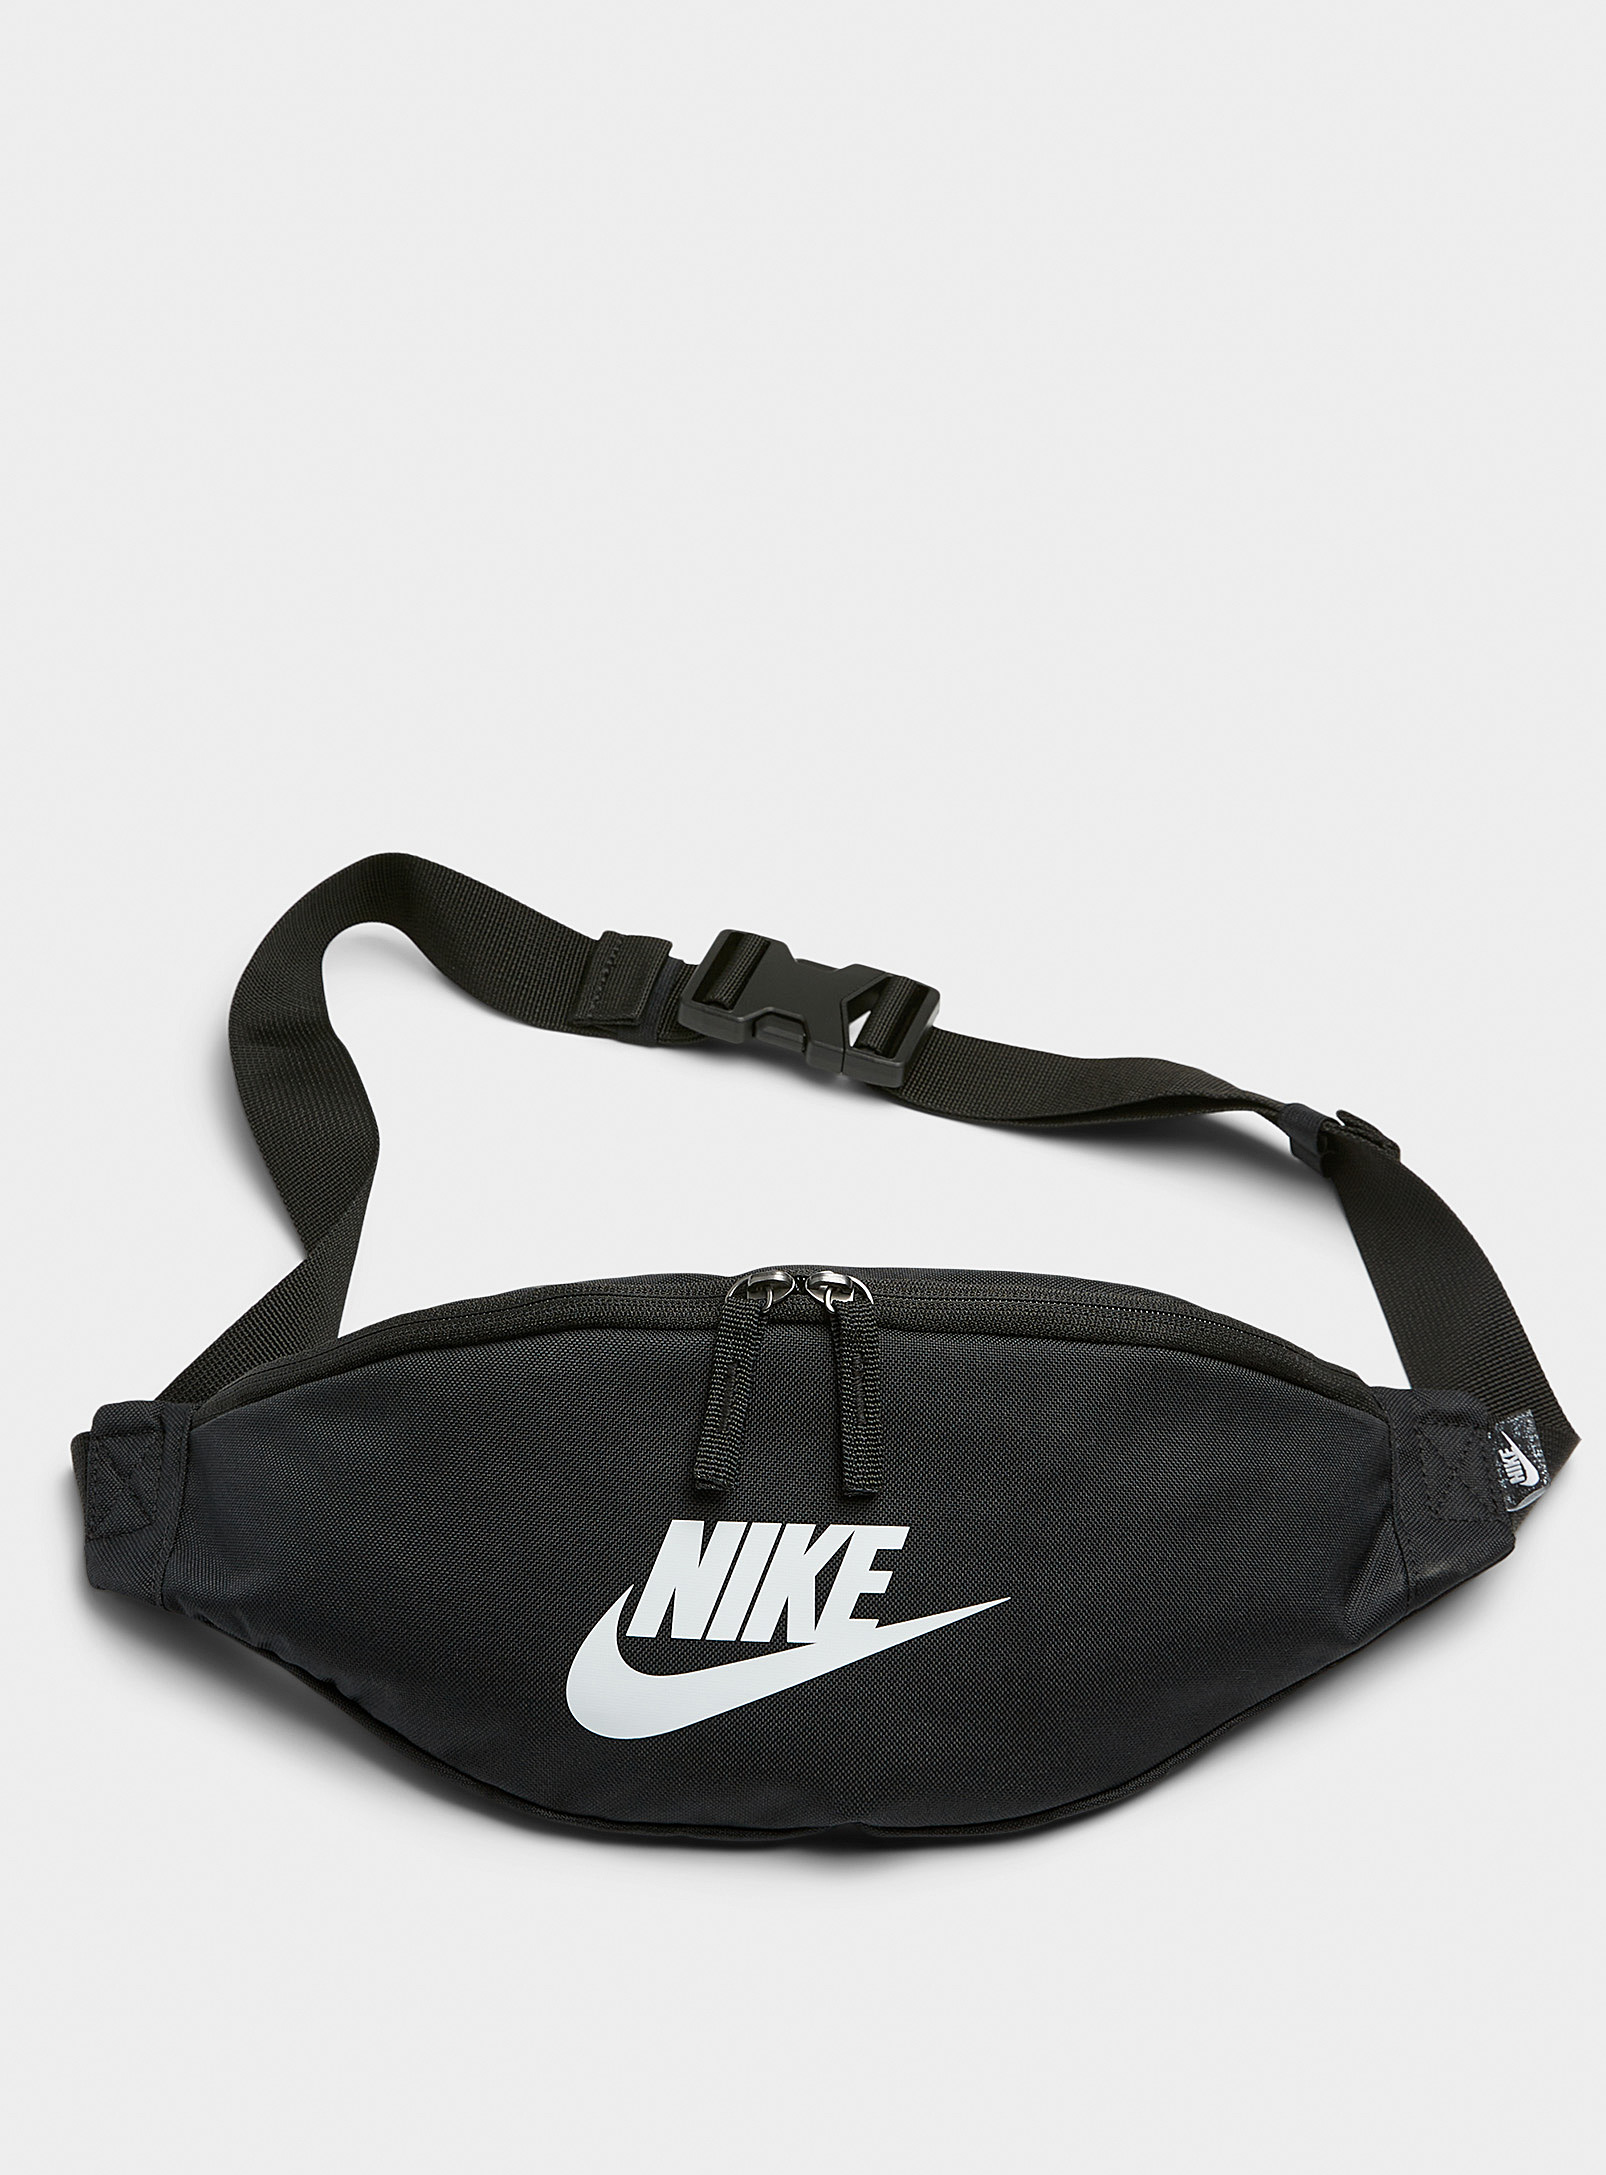 Nike - Men's Heritage belt bag